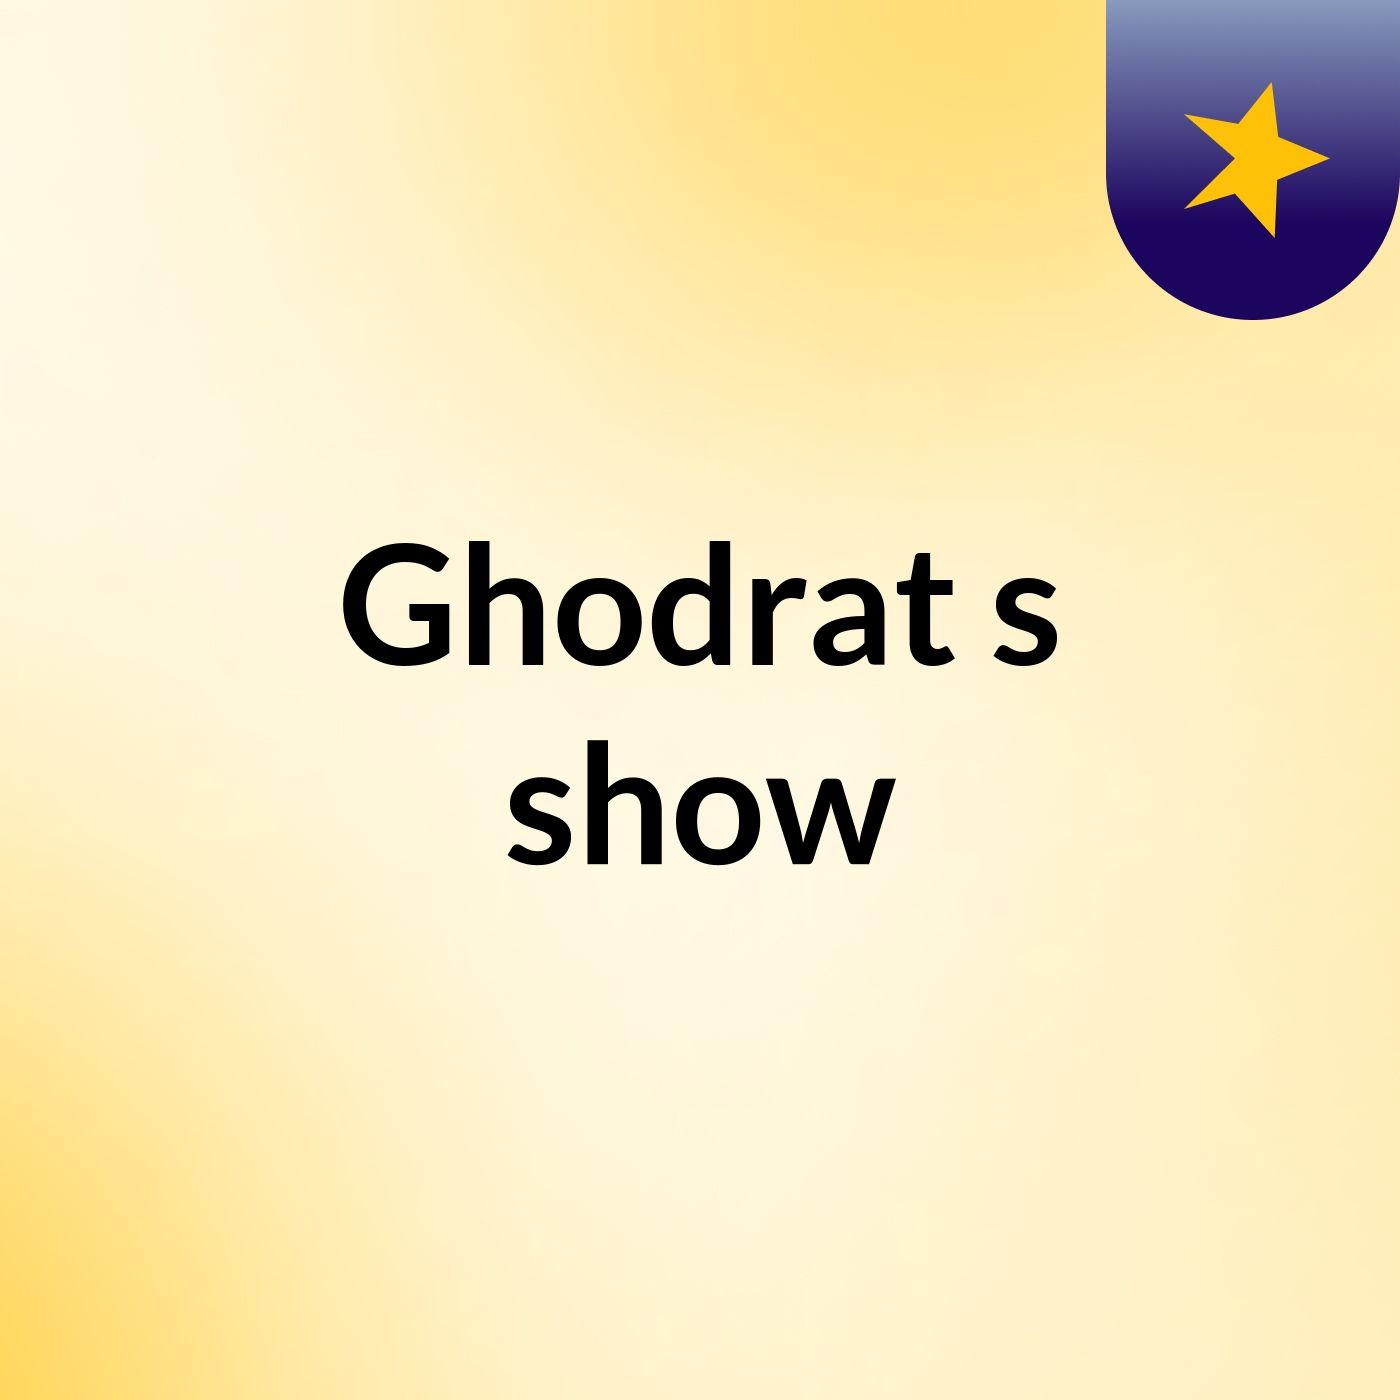 Ghodrat's show